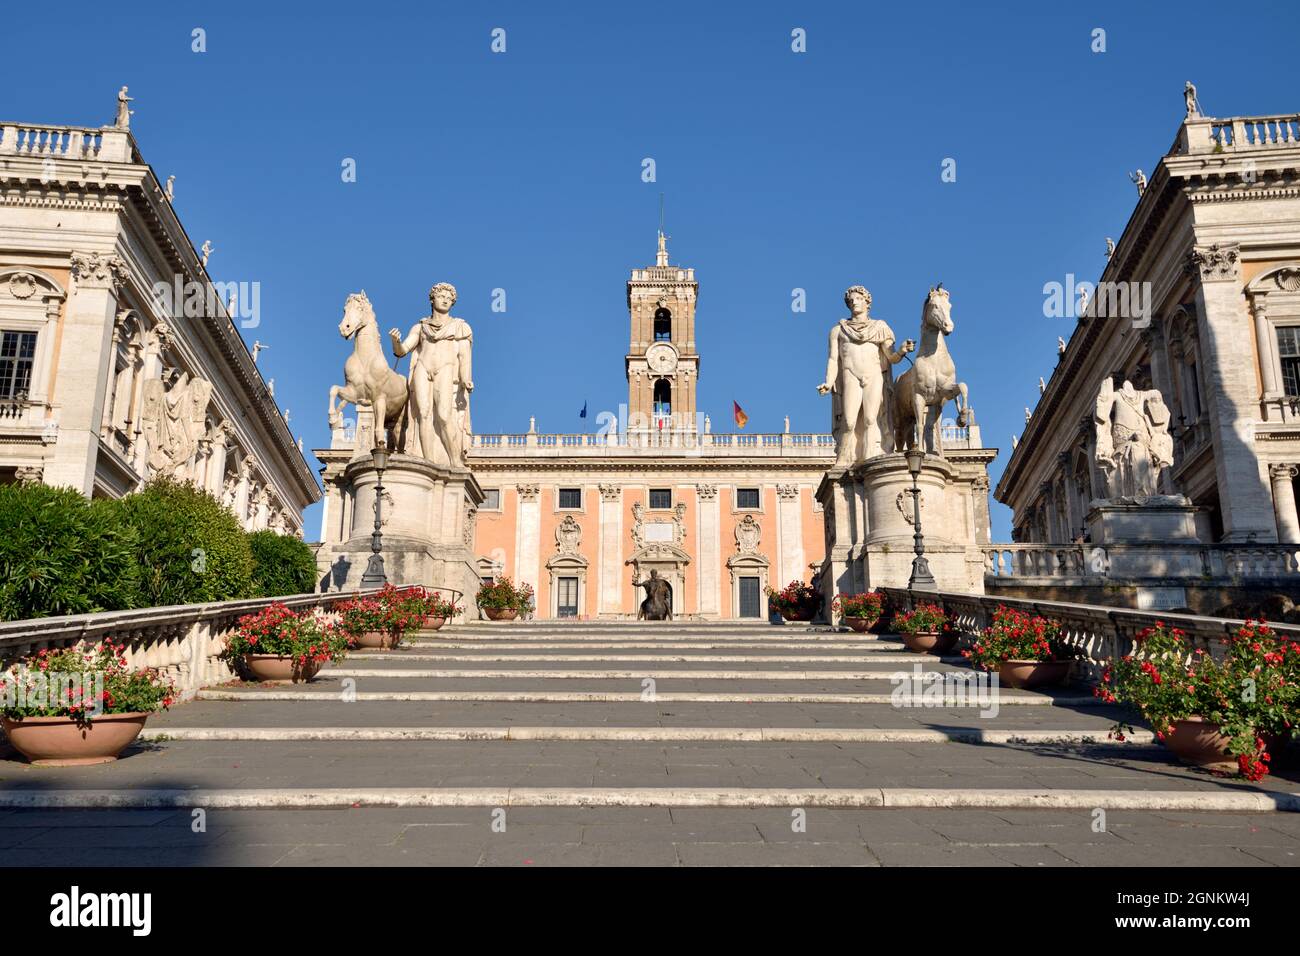 italy, rome, capitoline hill, piazza del campidoglio, statues of castor and pollux and palazzo senatorio Stock Photo